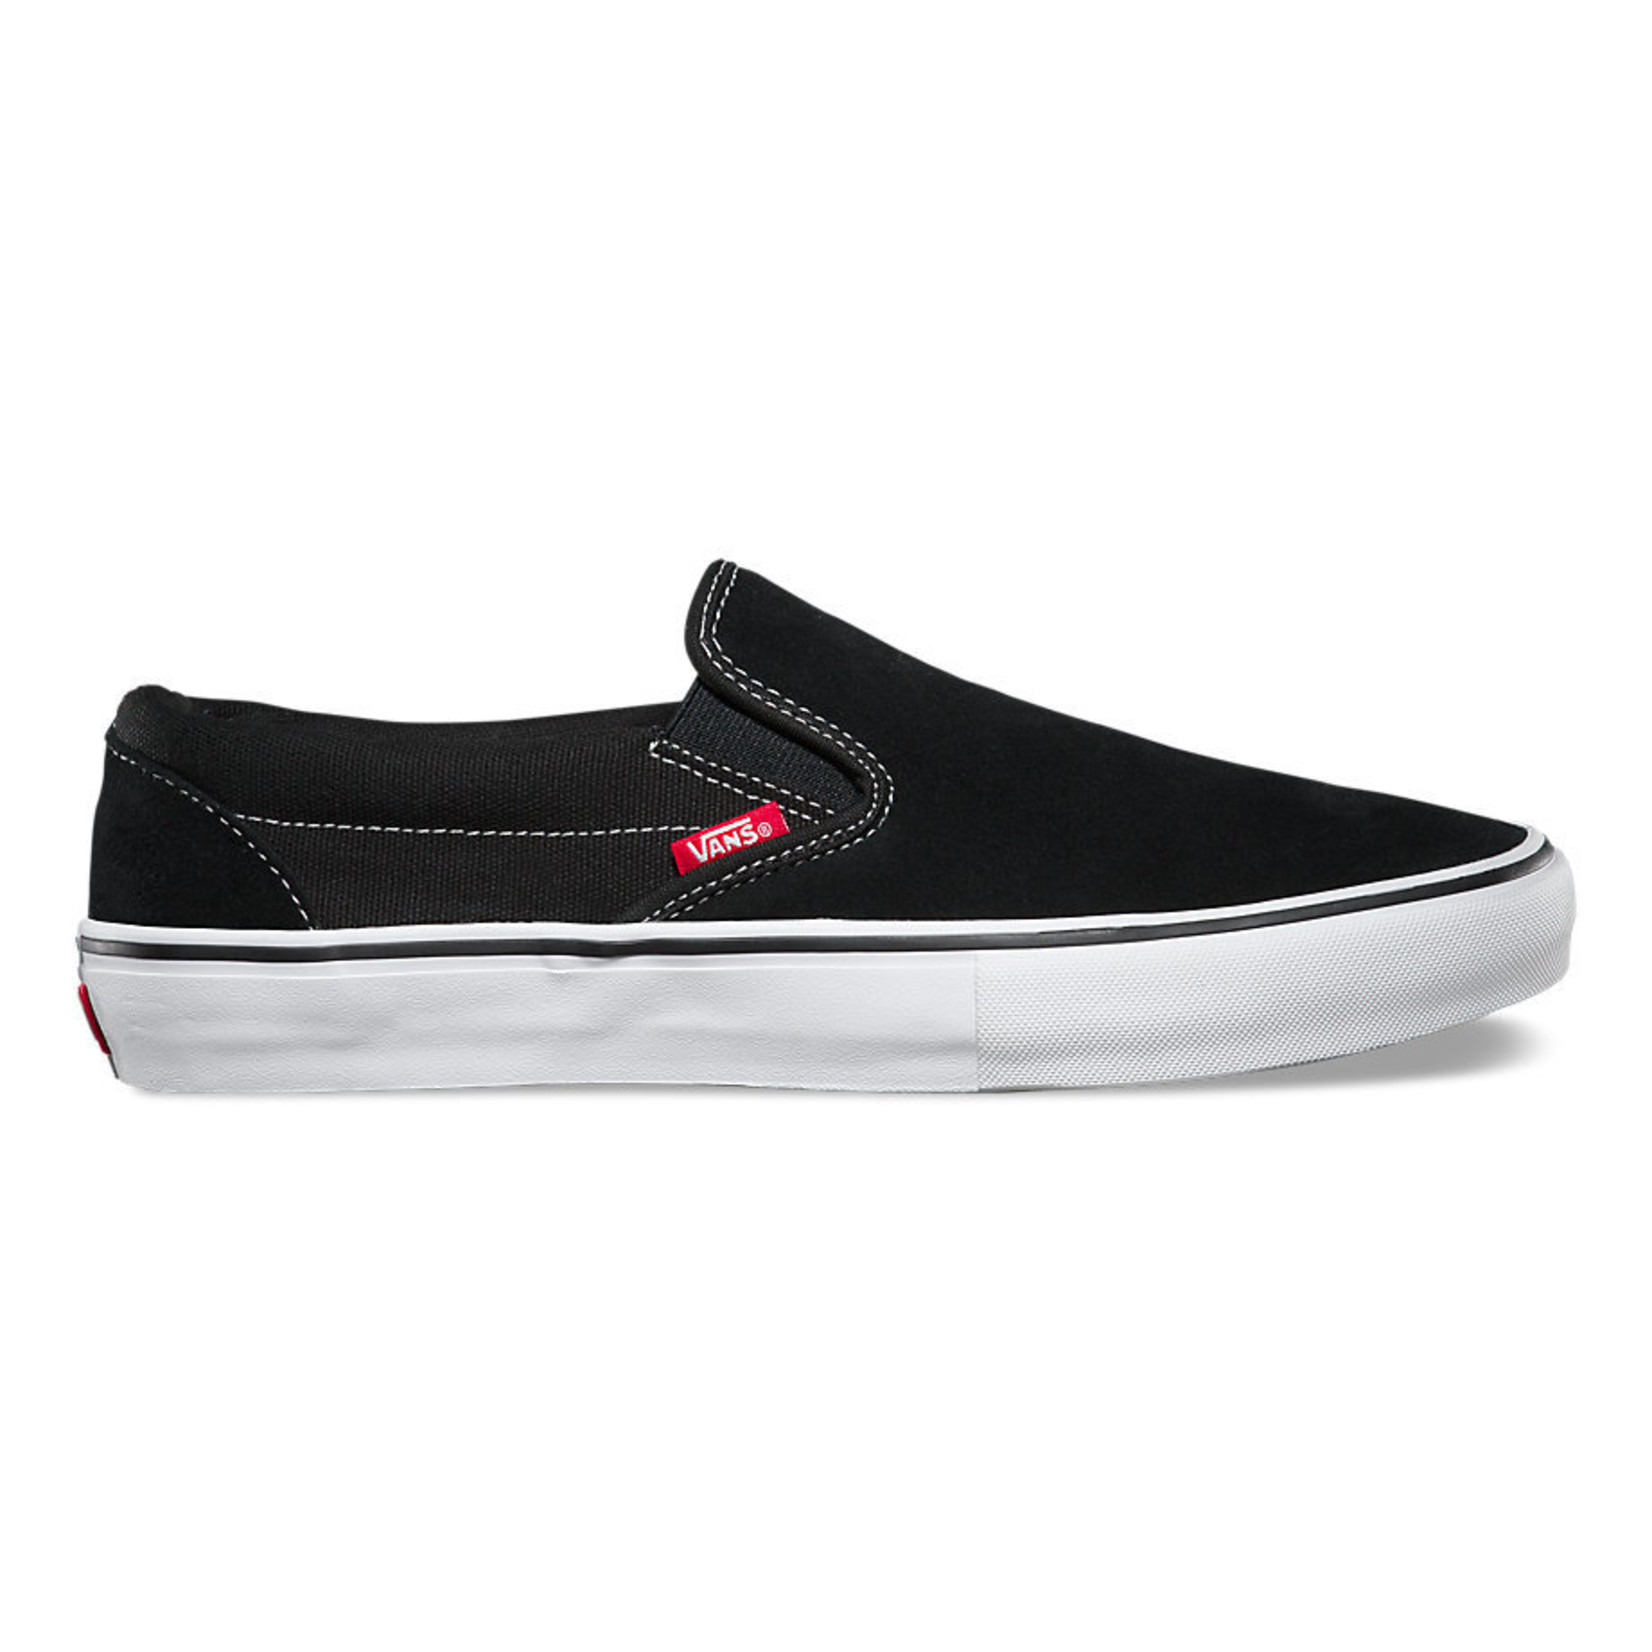 Vans Vans Slip On Pro Skate Shoes - Black/White/Gum